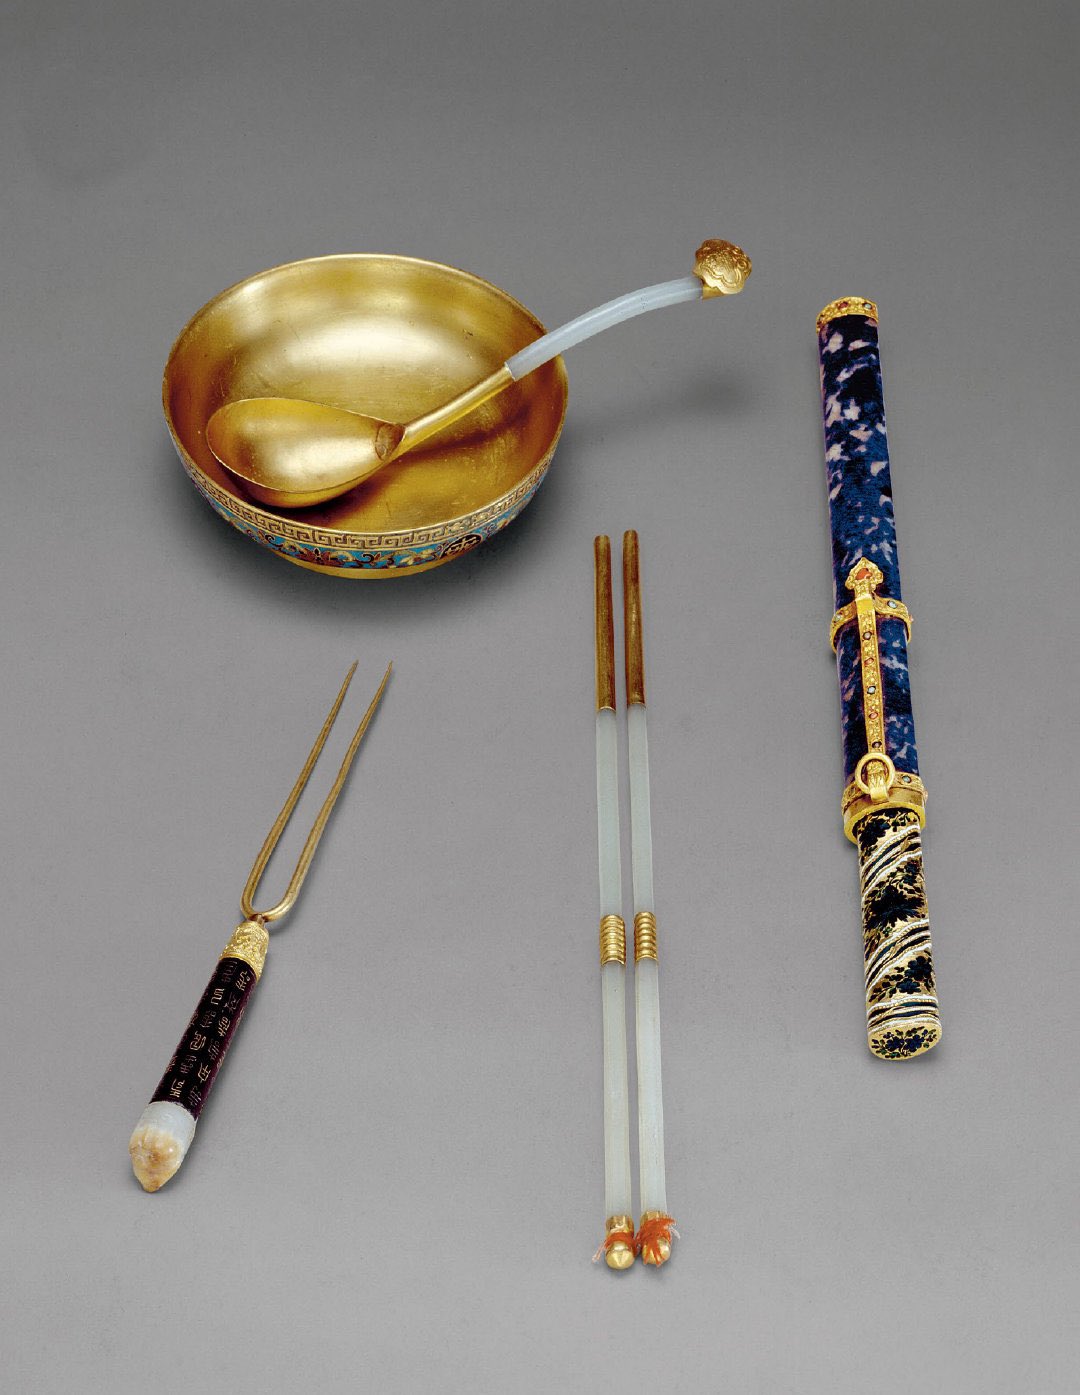 清代.用膳用具（碗、筷、刀、叉、勺），故宫博物院藏